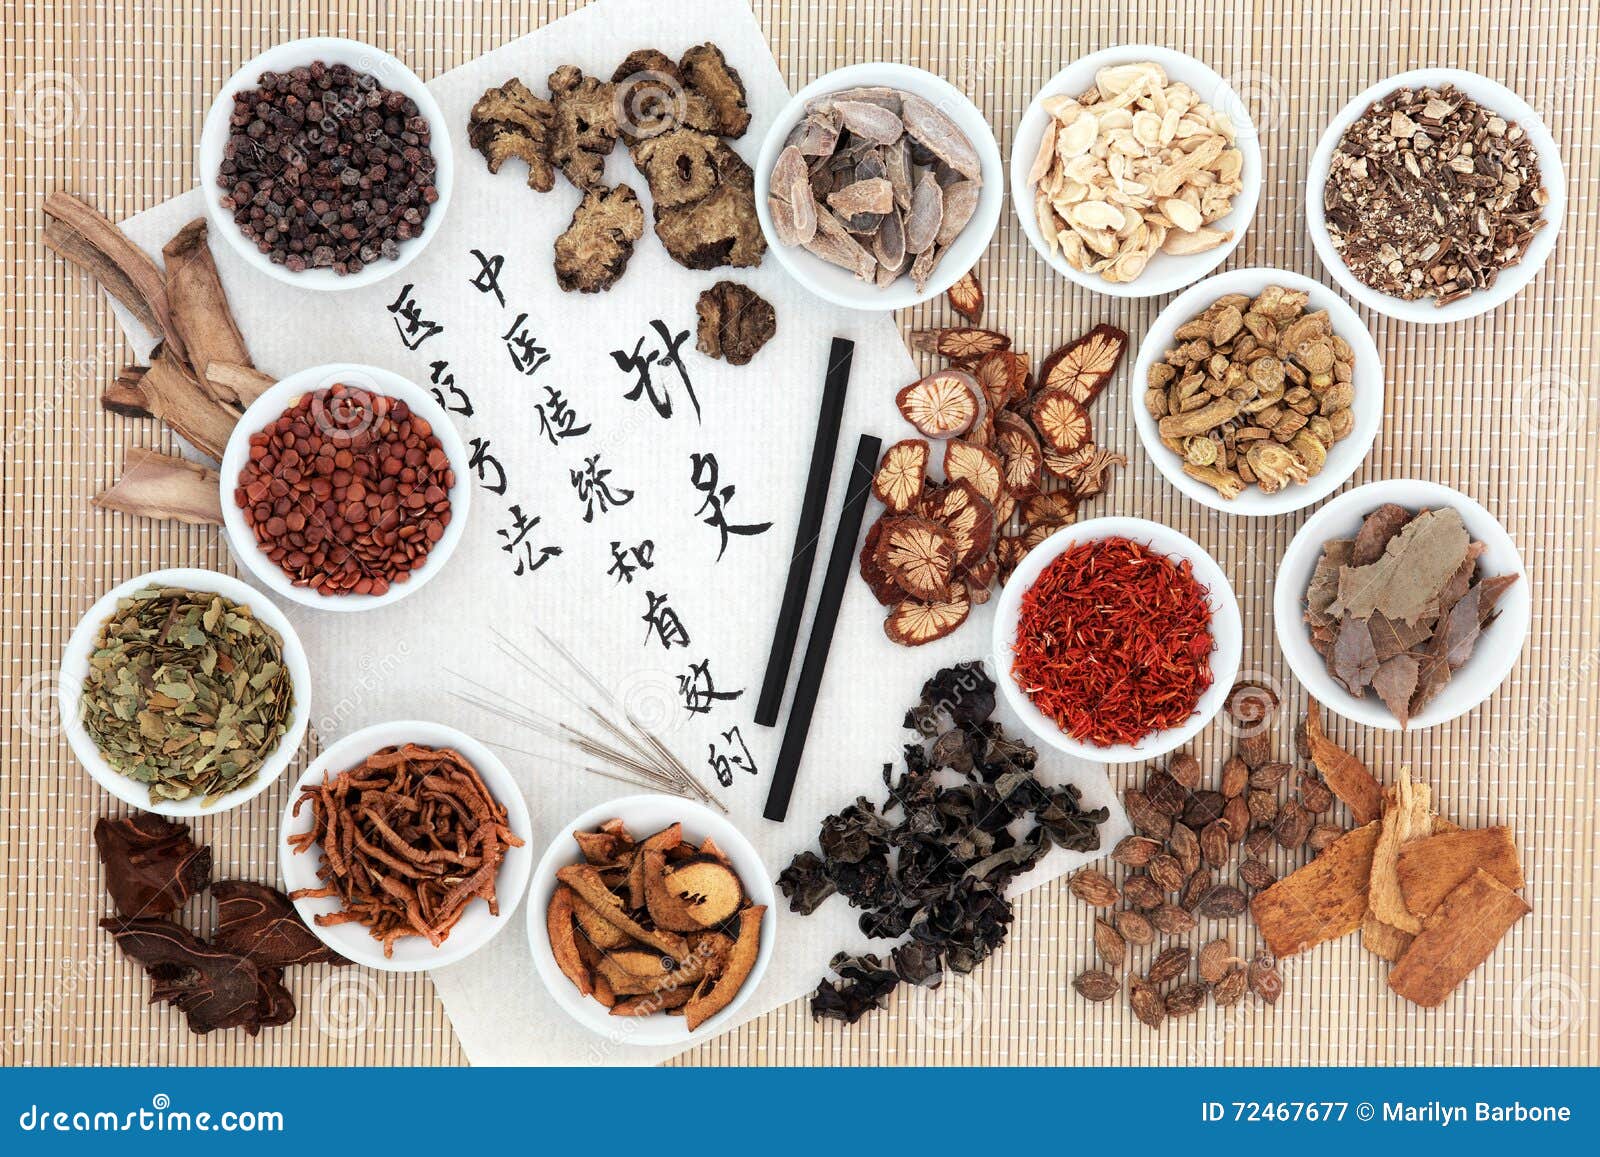 acupuncture chinese medicine